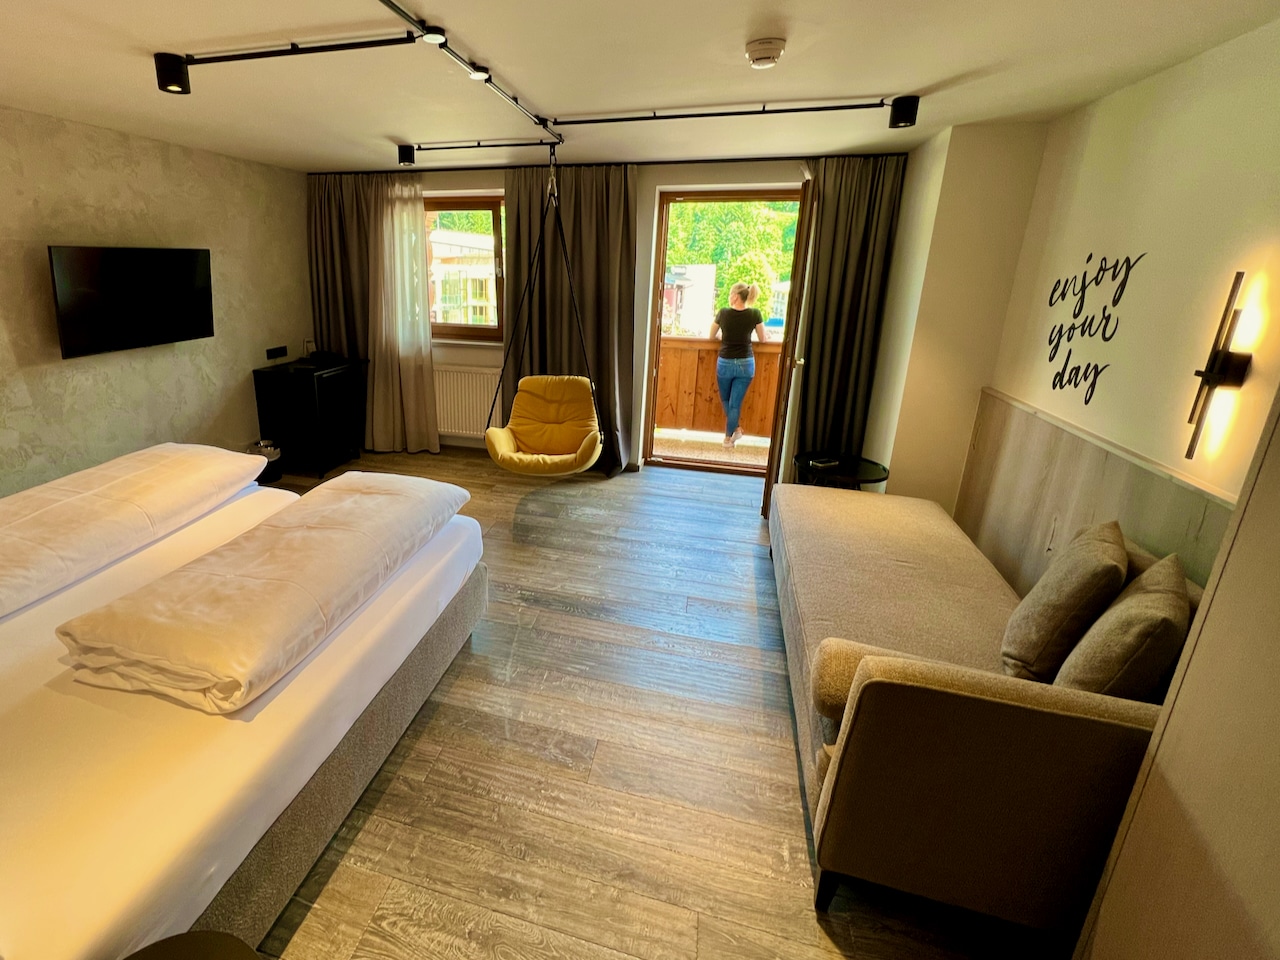 Las habitaciones y suites cuentan con TV por cable, baño y algunas tienen balcón. Los precios dependen de la temporada y la duración de la estancia. Informe de campo de calificaciones de experiencias de Hotel Alte Post Fieberbrunn